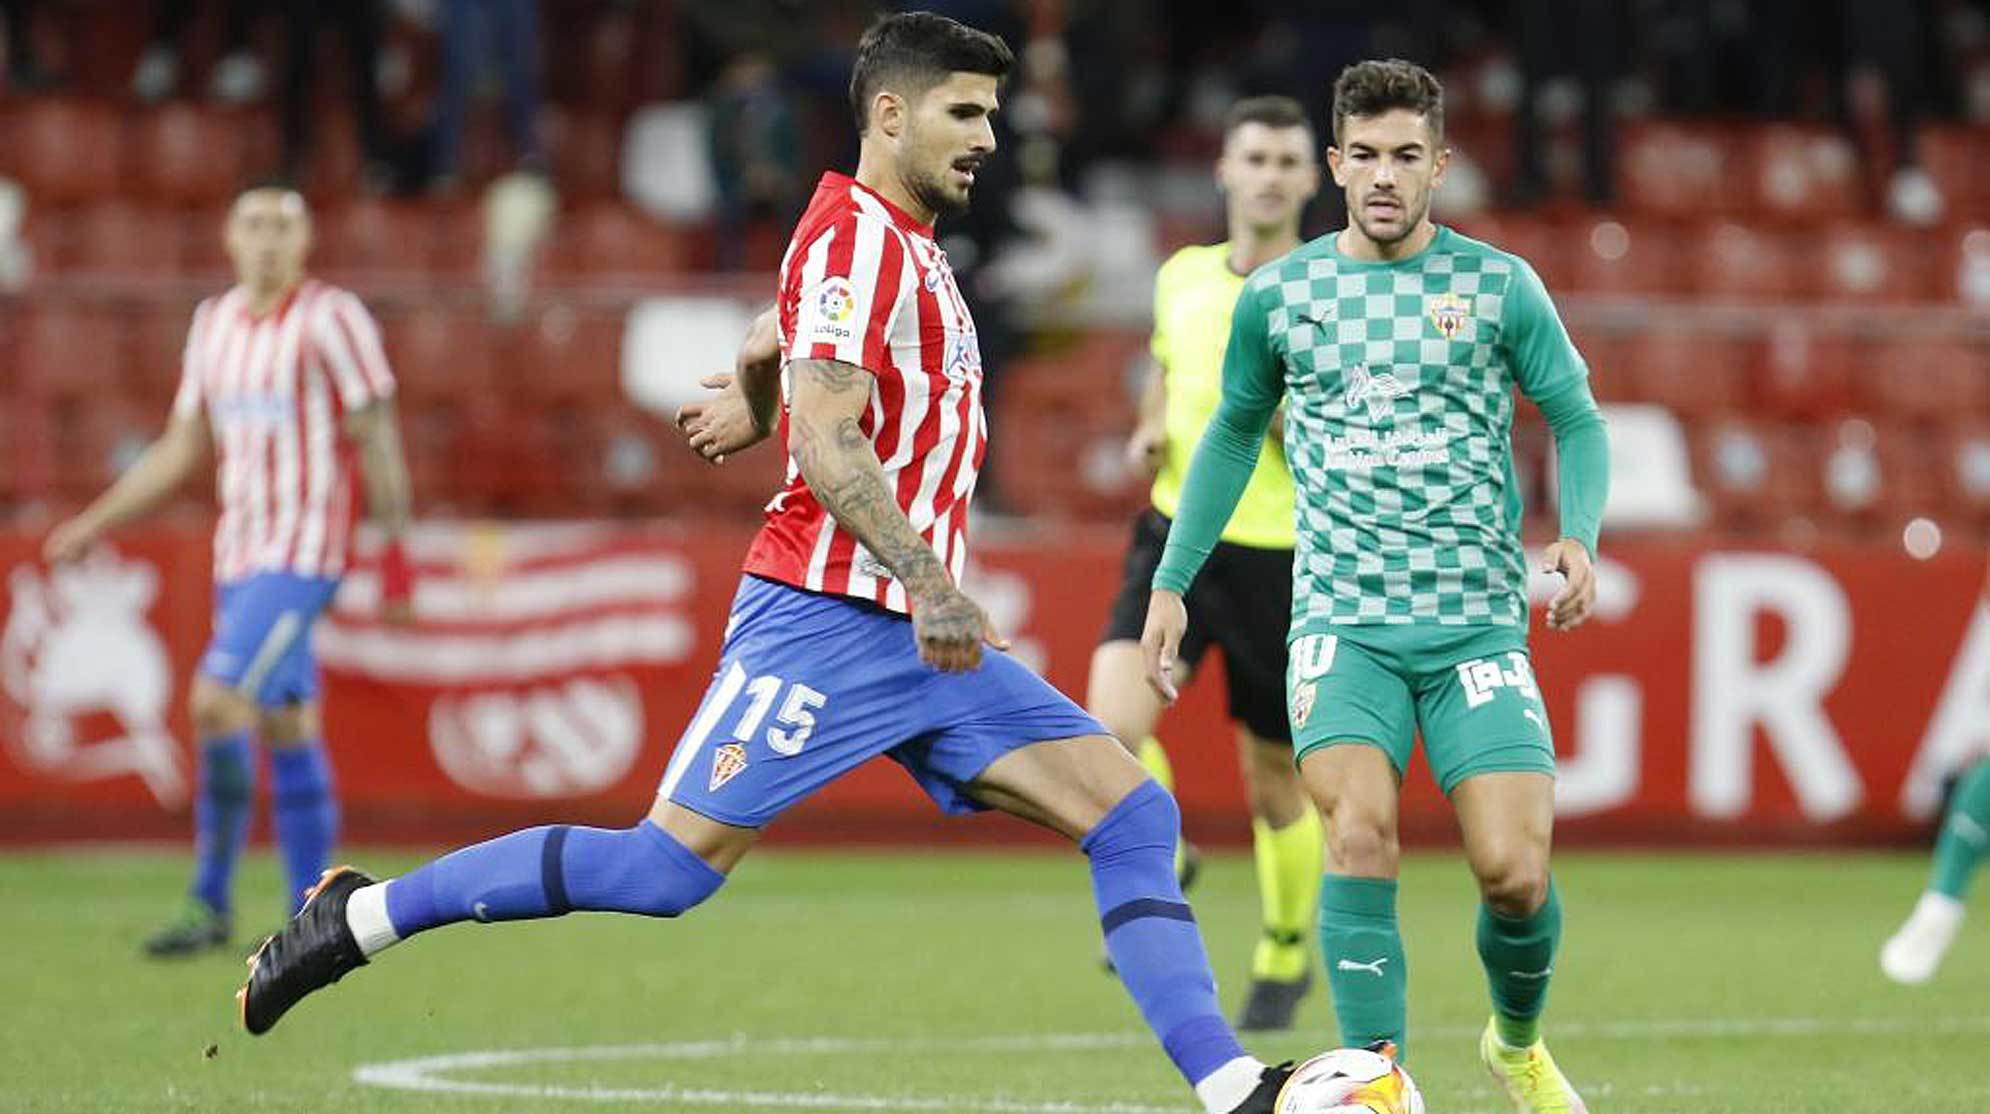 Berrocal golpea al balón en presencia del almeriense Curro Sánchez  en El Molinón